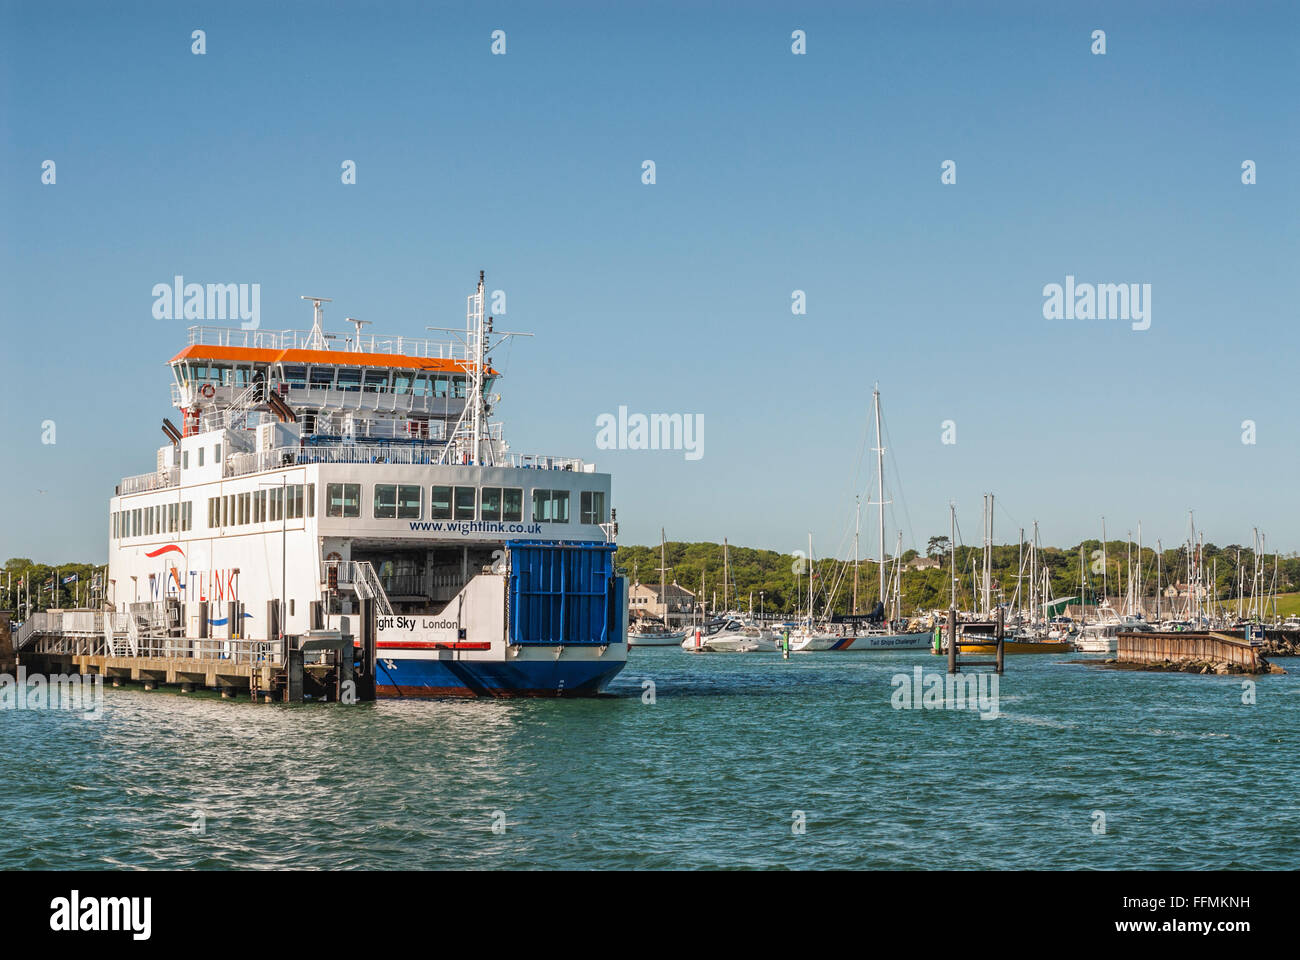 Die Wightlink Ferry liegt an der Marina von Yarmouth, Isle of Wight, England Stockfoto